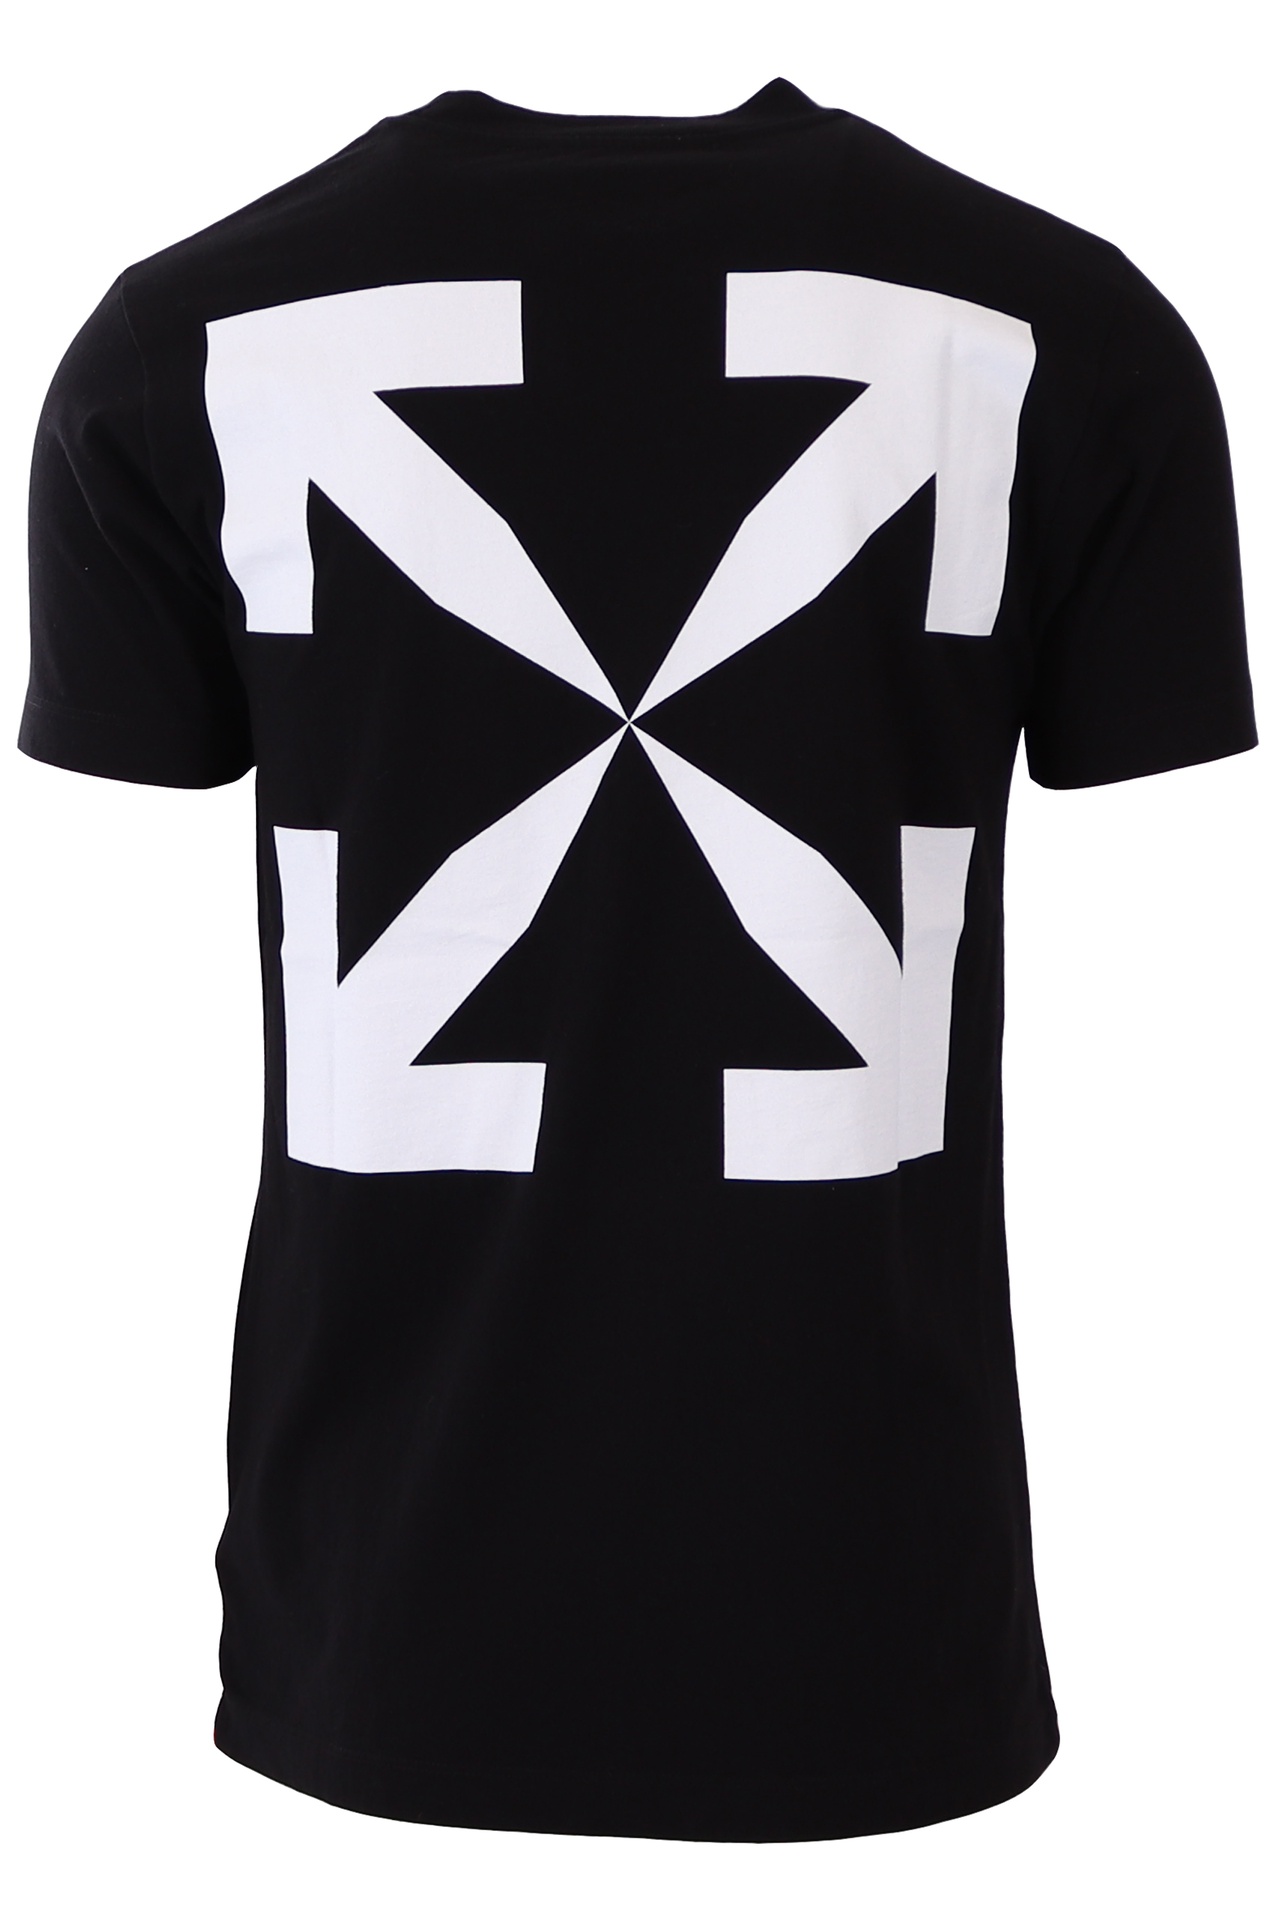 Off-White - Camiseta negra Monalisa - BLS Fashion